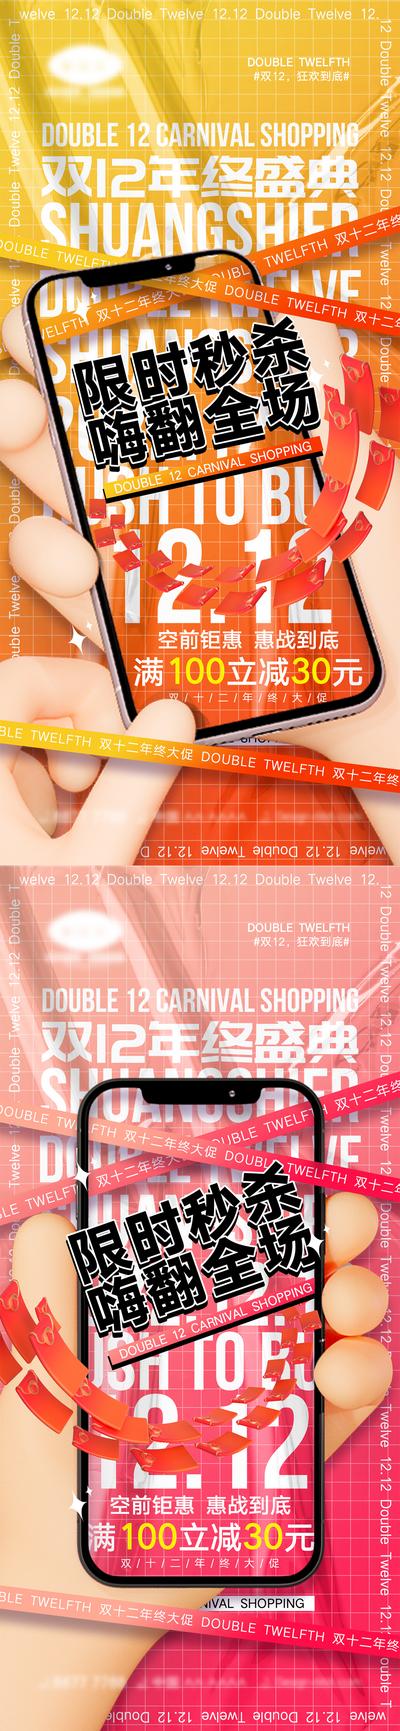 南门网 海报 双12 狂欢 购物 优惠 促销 手机 扁平化 系列